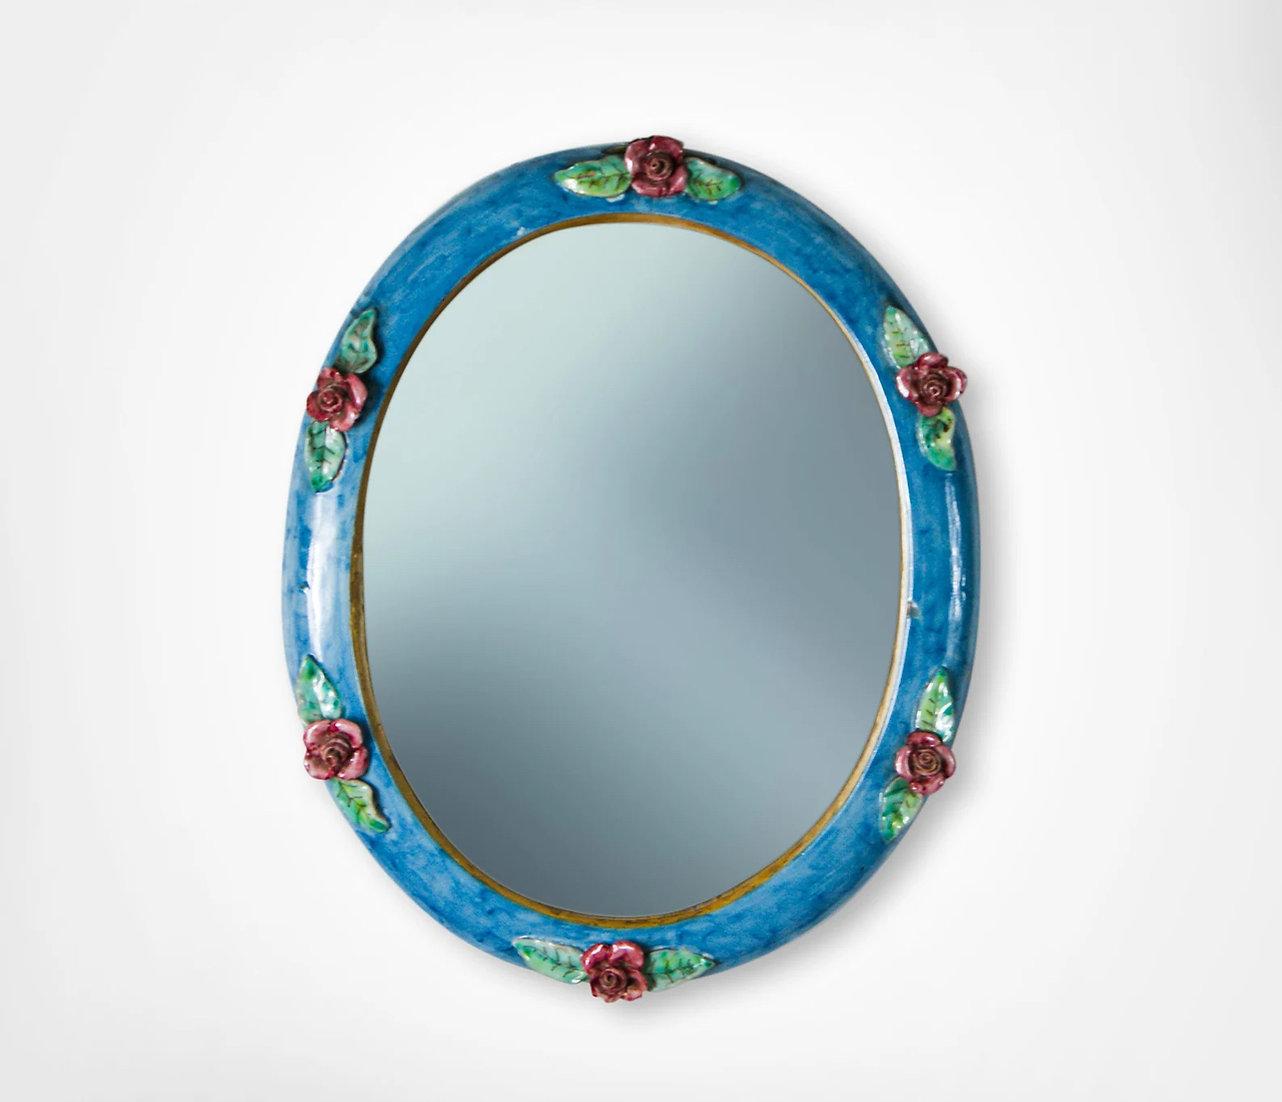 Attraktiver glasierter Keramik-Wandspiegel von C.A.S Vietri Italien, ca. 1950er Jahre.
Hübscher ovaler Wandspiegel mit lebhaft blau glasierter Keramikeinfassung.
Verziert mit applizierten roten Rosen und Blattwerk.
Sehr reizvoller Spiegel.
Sie